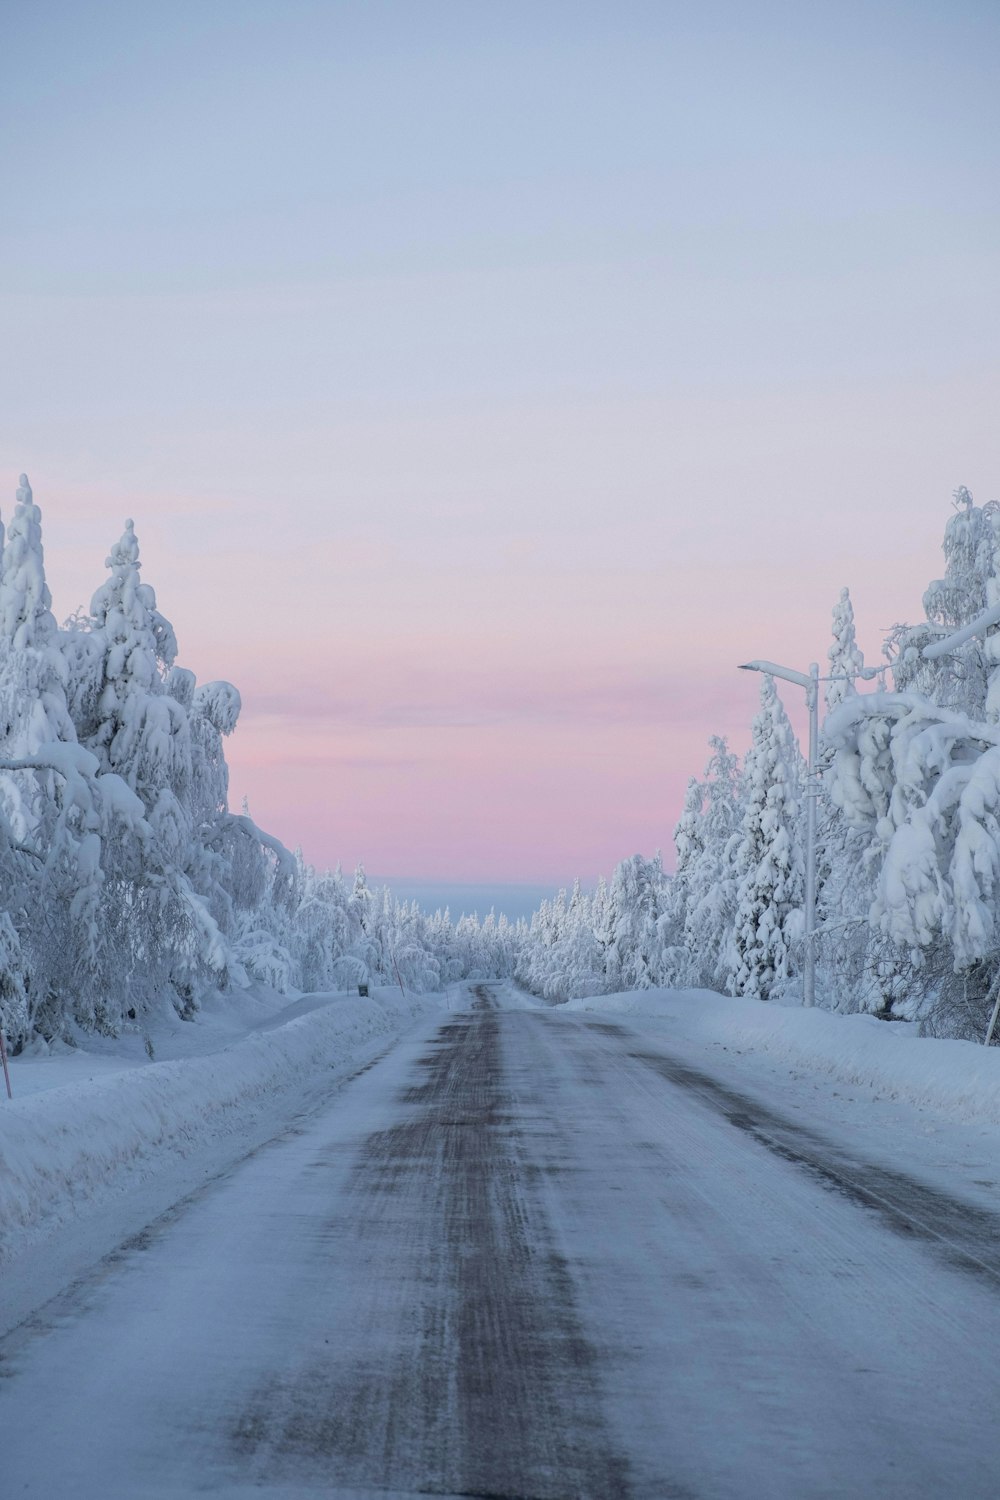 árvores cobertas de neve e estrada durante o dia